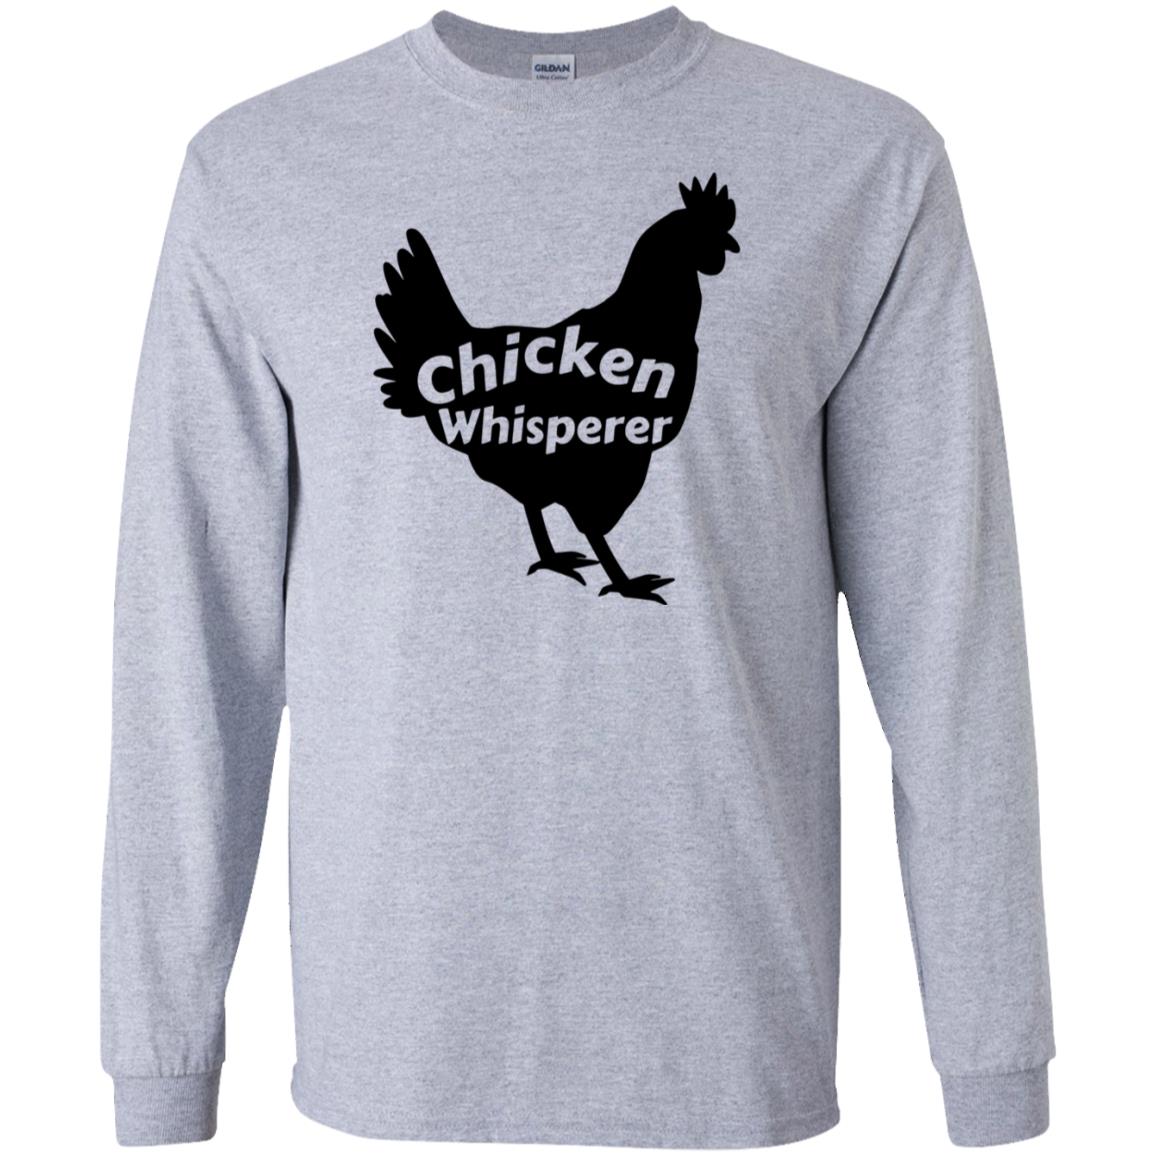 Chicken Whisperer Shirt - 10% Off - FavorMerch